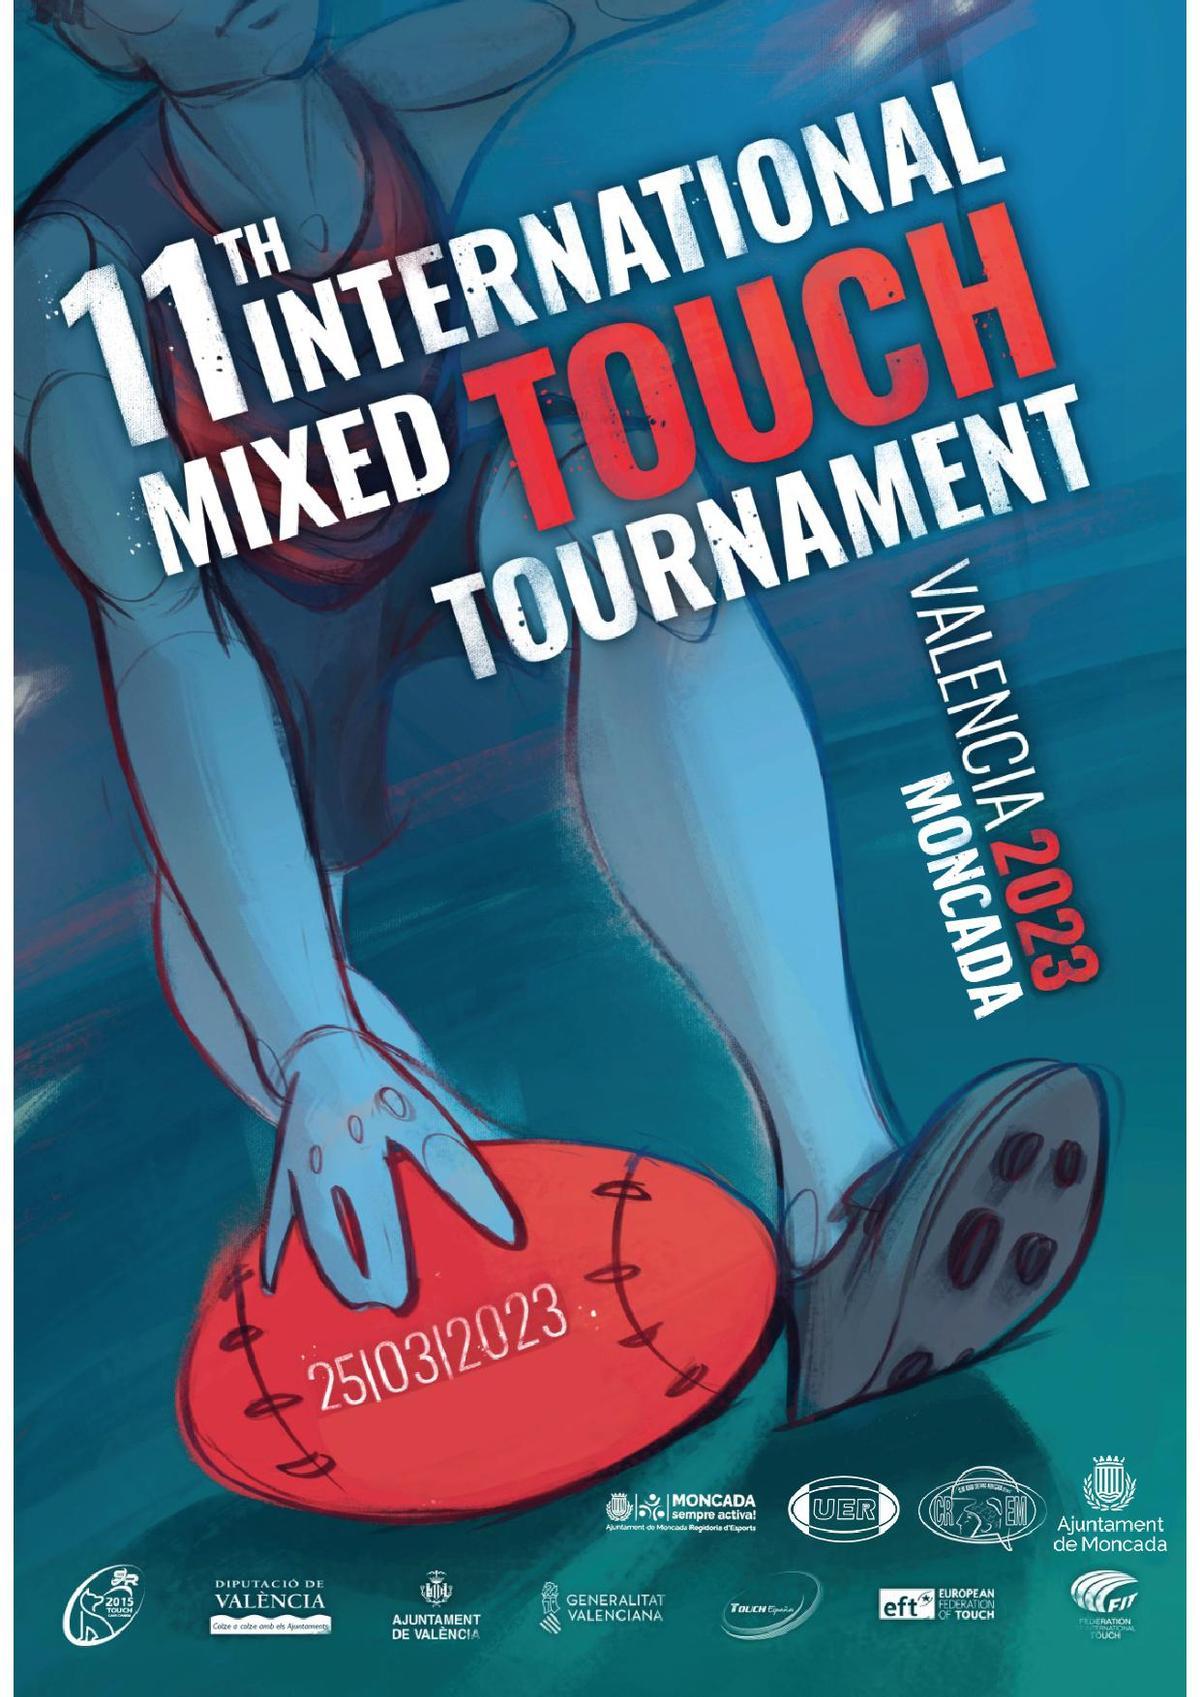 Cartel oficial del 11th Internacional Mixed Touch Tournament 2023.